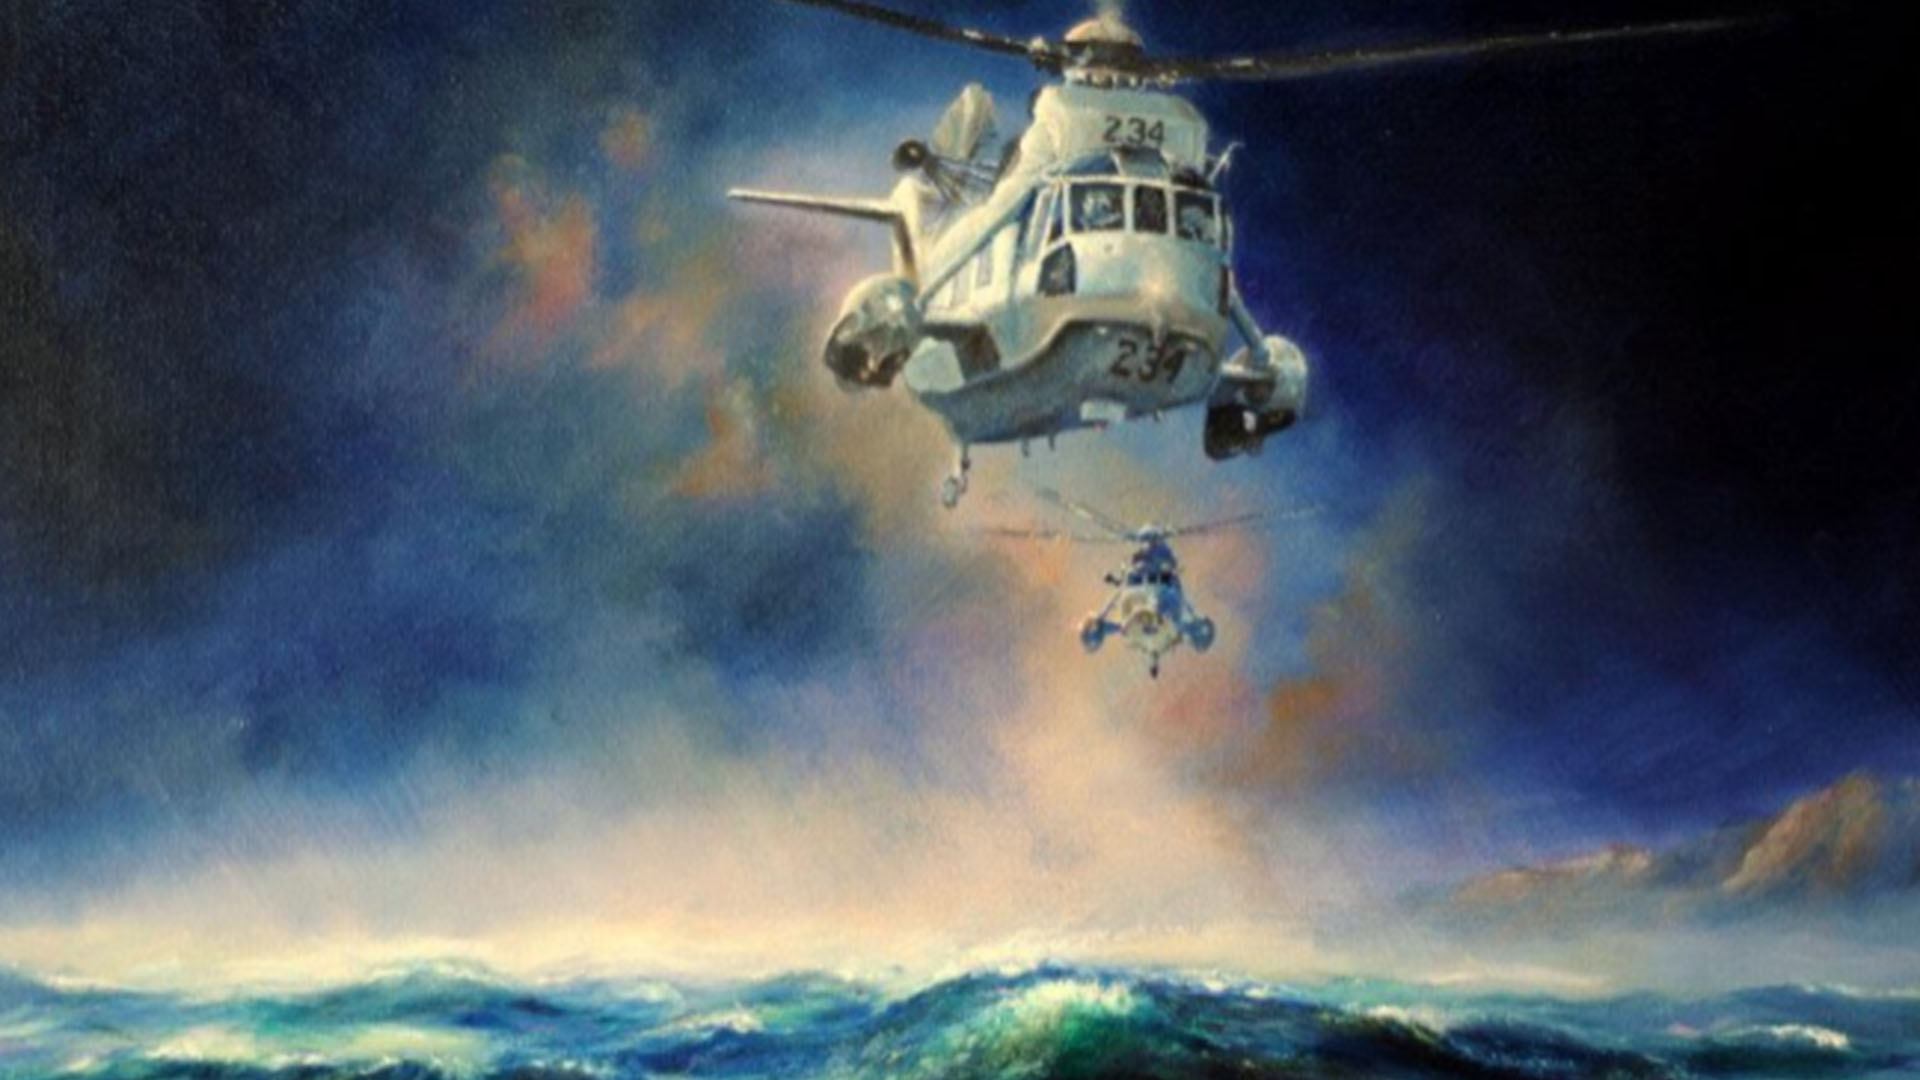 Helicópteros Sea King en un óleo